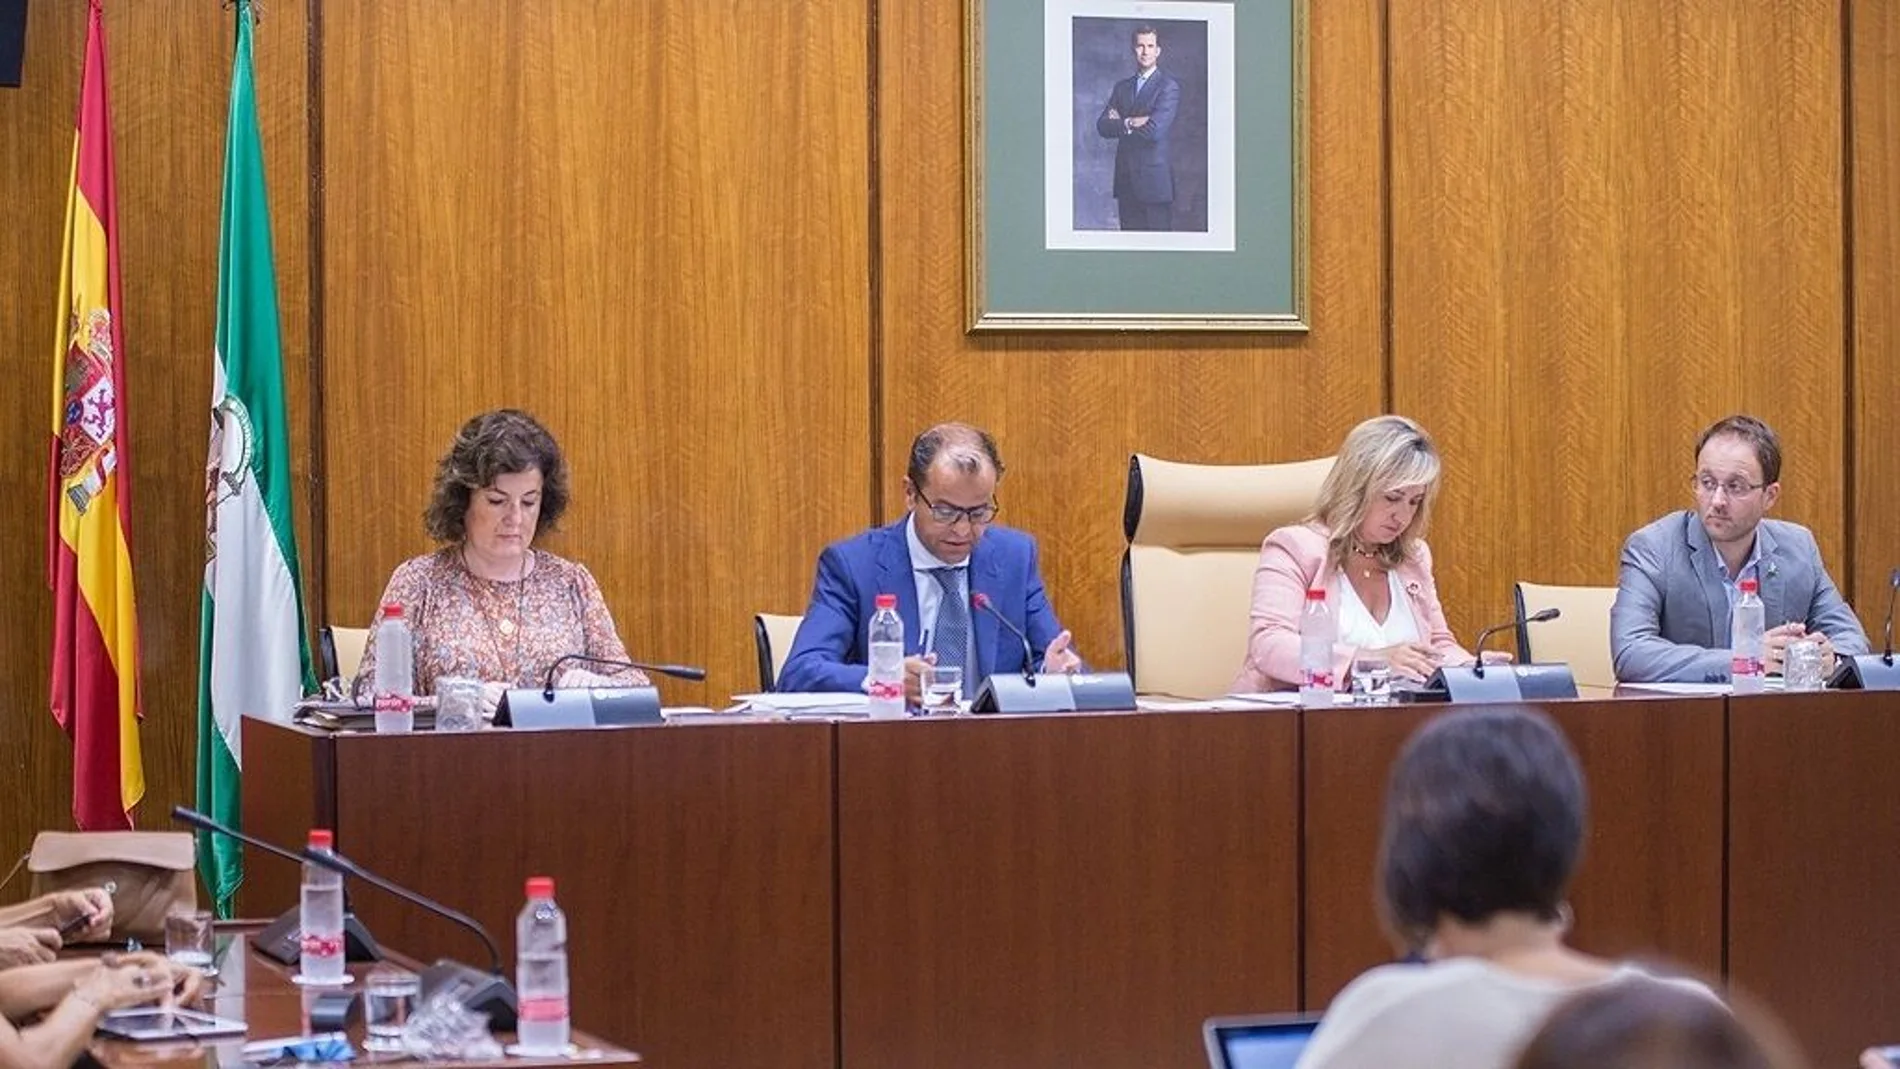 El director de la RTVA, Juande Mellado, compareció este miércoles en Comisión parlamentaria /Foto: La Razón